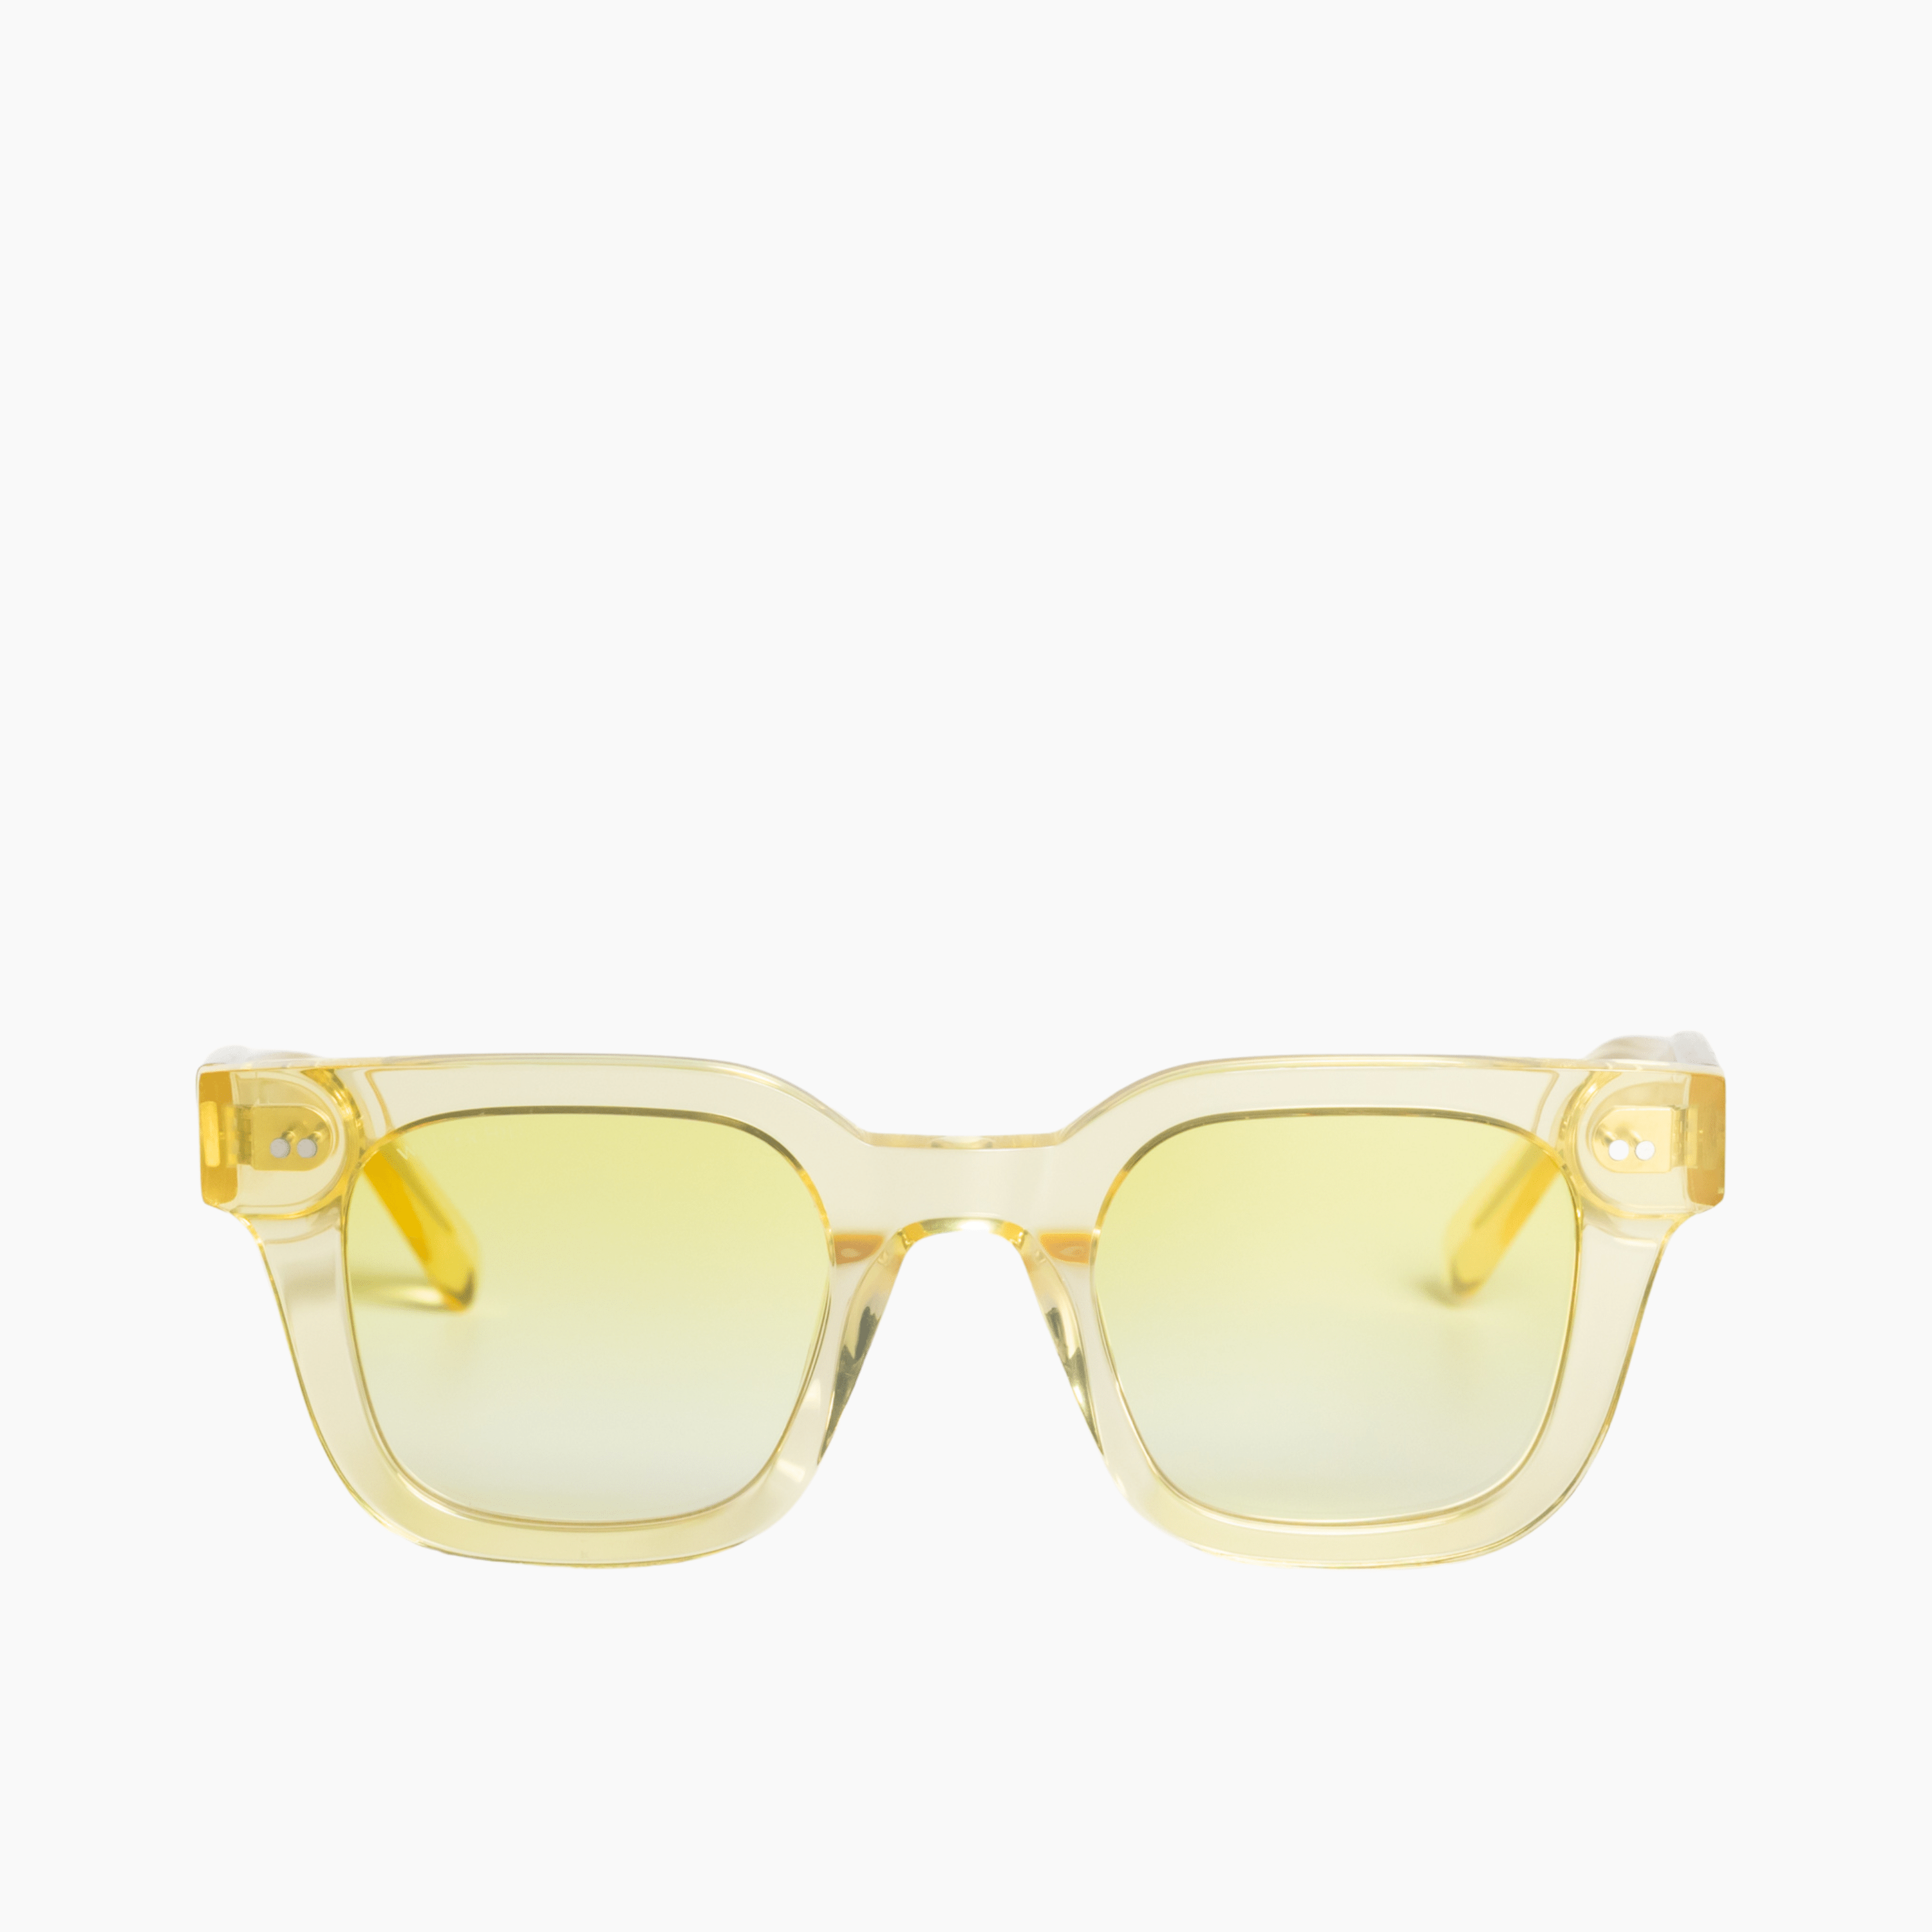 Walter Hill Sunglasses Yellow / Standard / Cat.2 XAVIER - Yellow